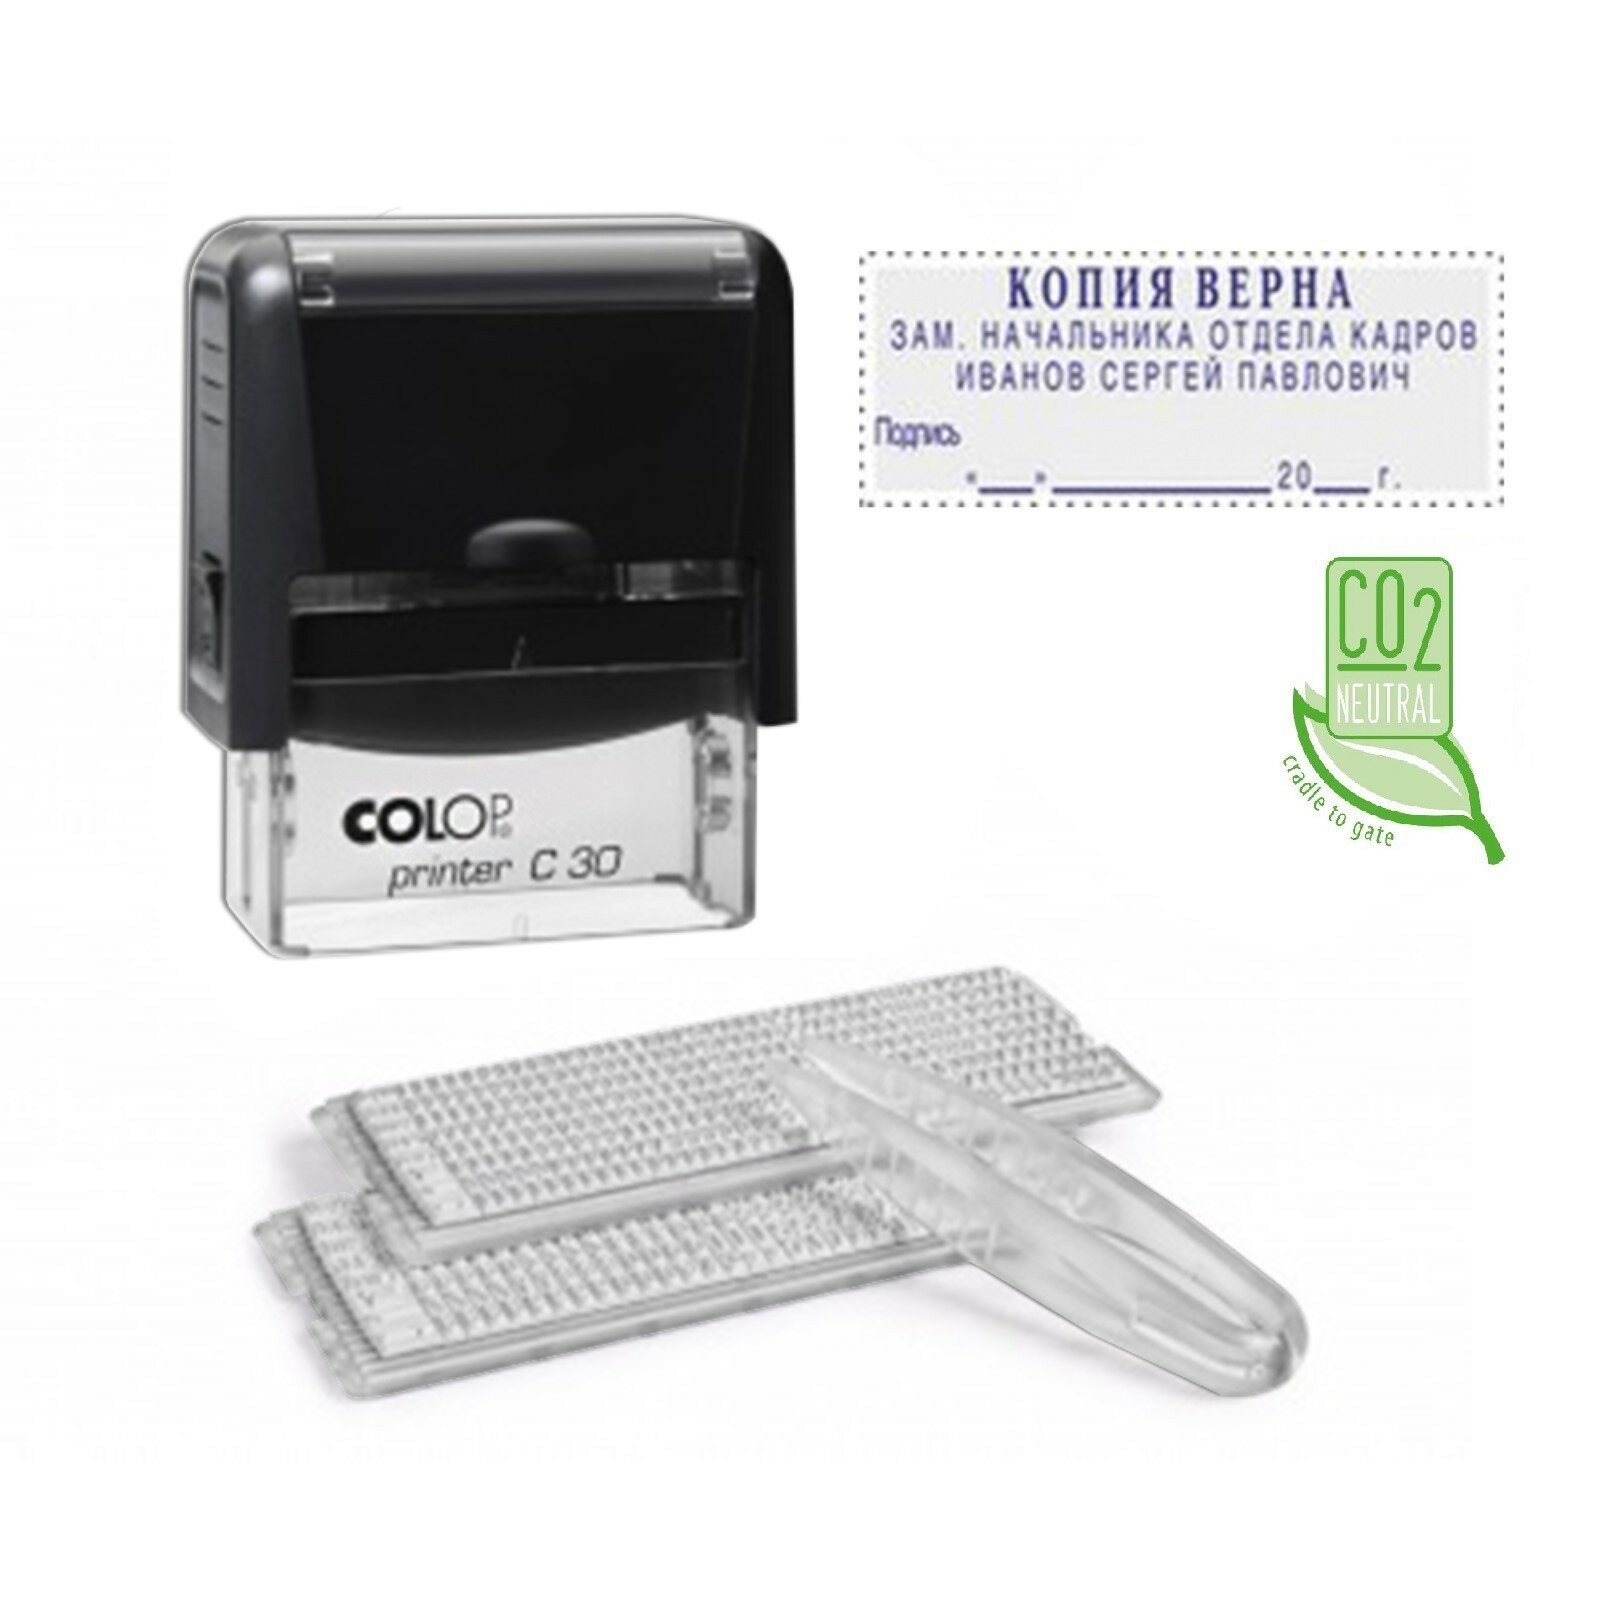 Самонаборный штамп автоматический COLOP , оттиск 47 х 18 мм, шрифт 3.1 мм, прямоугольный - фото №12